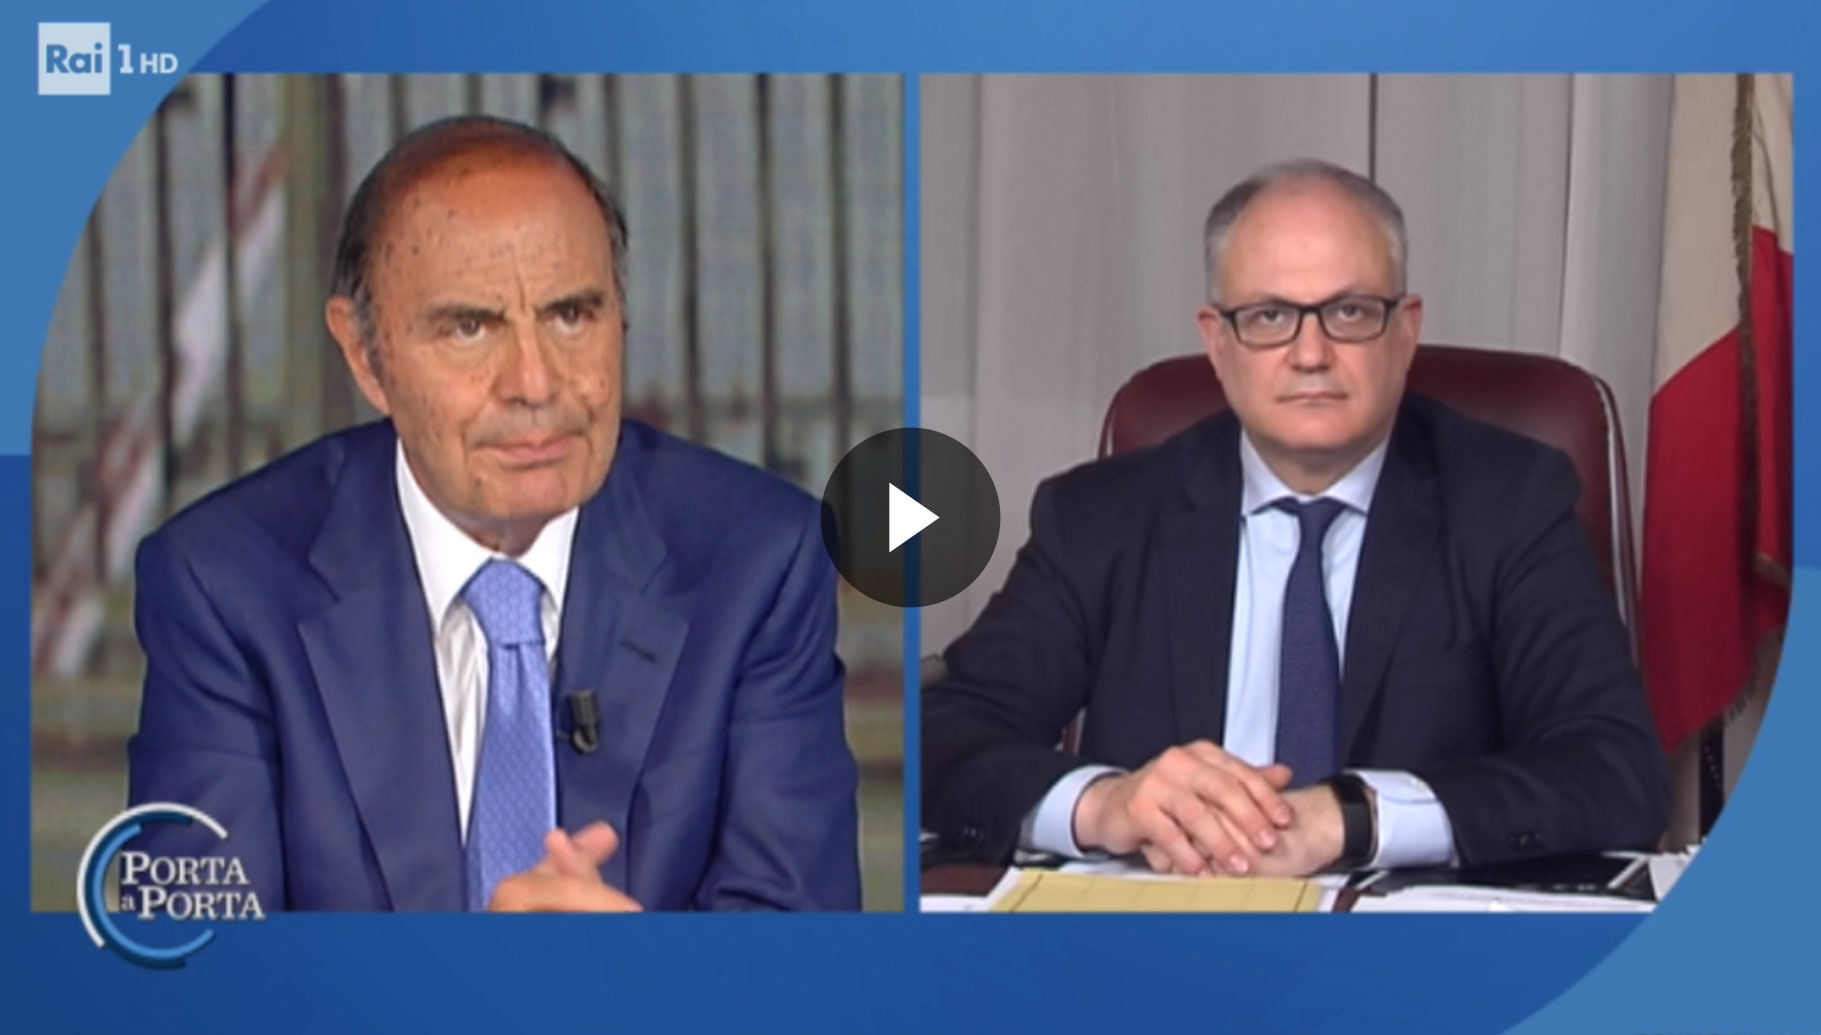 ntervista del ministro dell’Economia e delle Finanze, Roberto Gualtieri, alla trasmissione “Porta a porta” (Rai1) - Vai al video